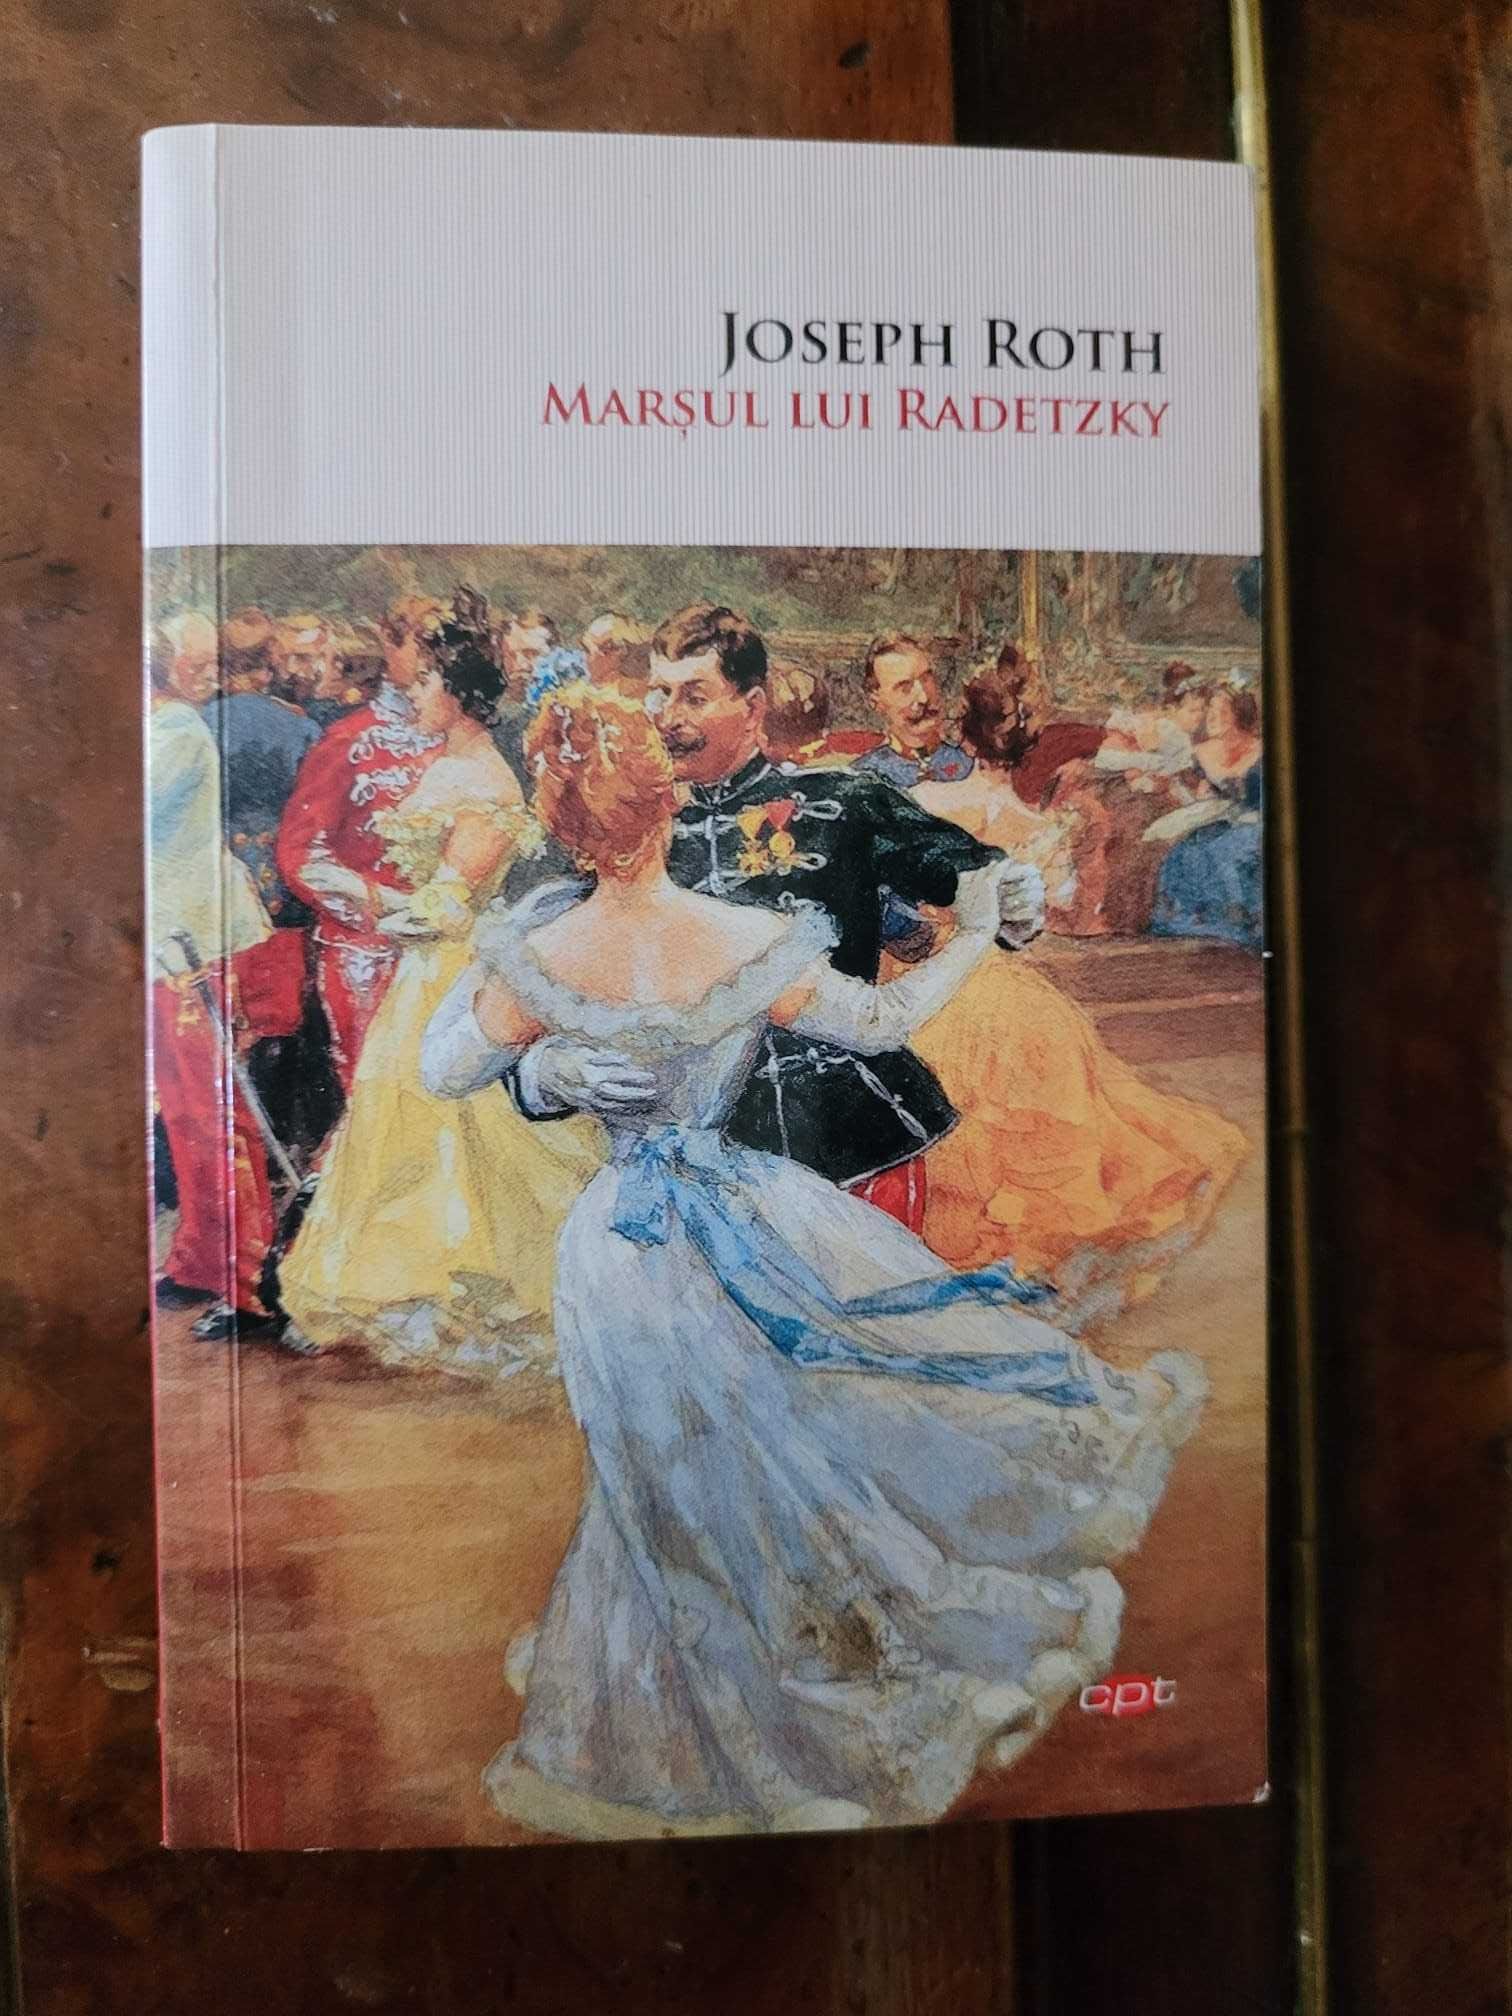 roman Marsul Lui Radetzky
JOSEPH ROTH